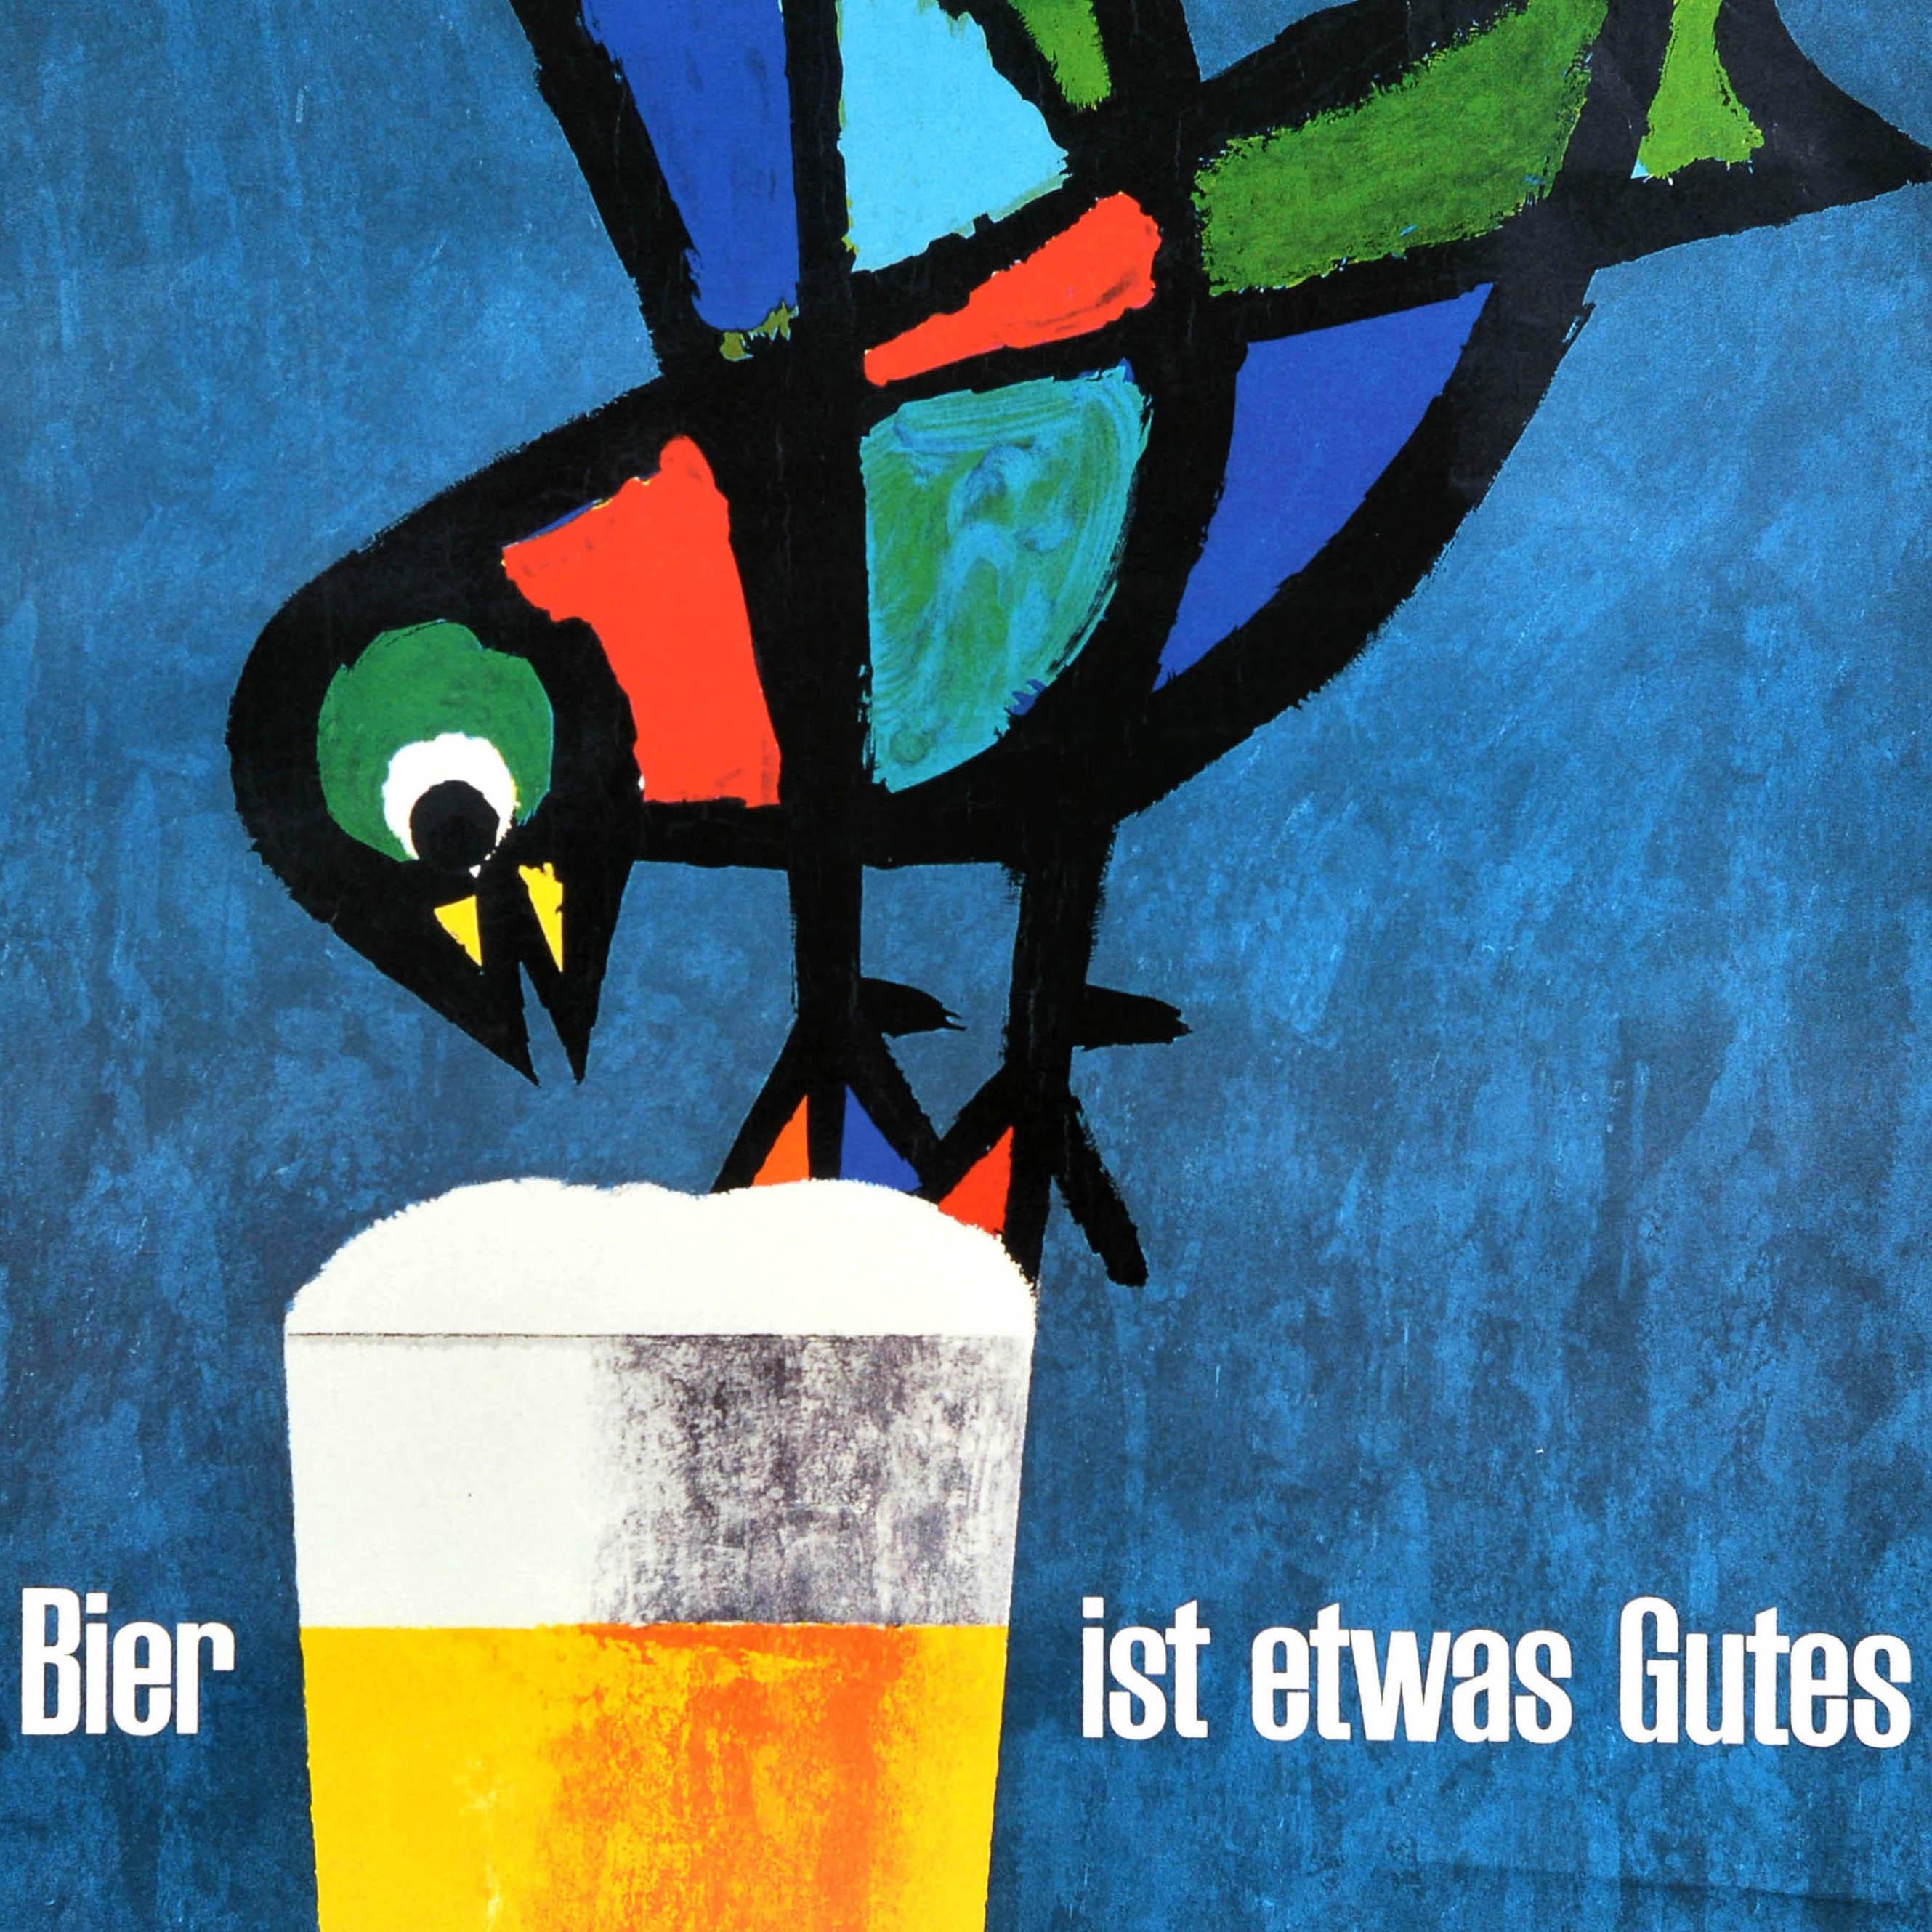 Affiche publicitaire vintage originale pour une boisson - Bier ist etwas Gutes / Beer is a good thing - comportant une illustration amusante de l'artiste graphique suisse Celestino Piatti (1922-2007) représentant un oiseau coloré sur un verre de